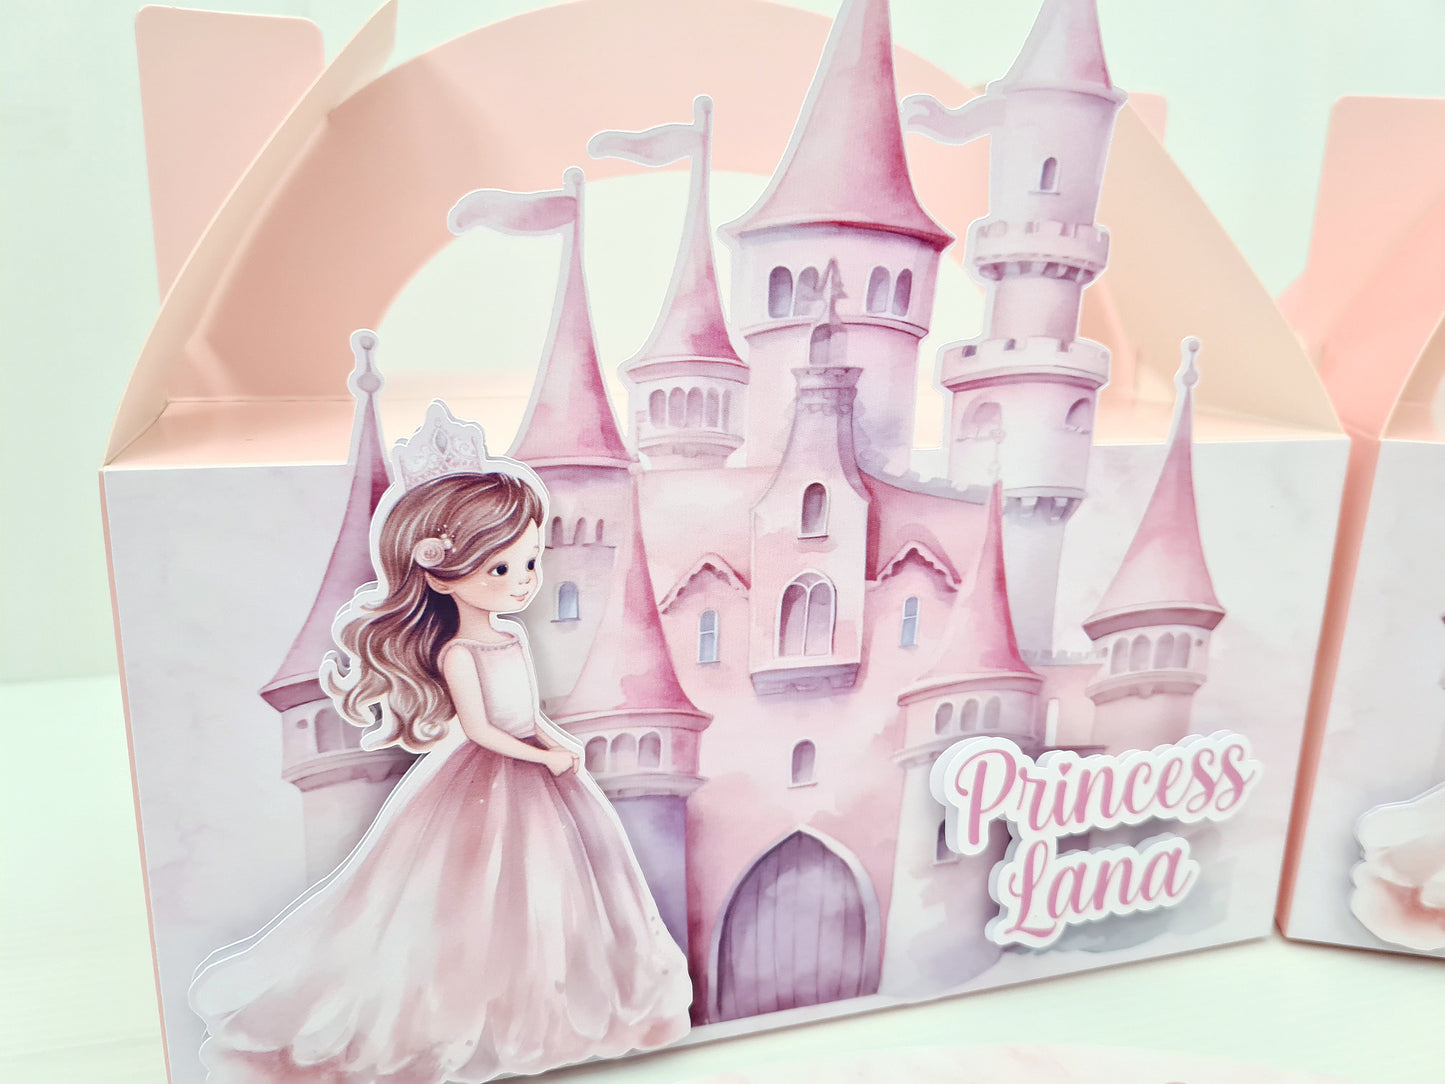 Princess Castle Party Box